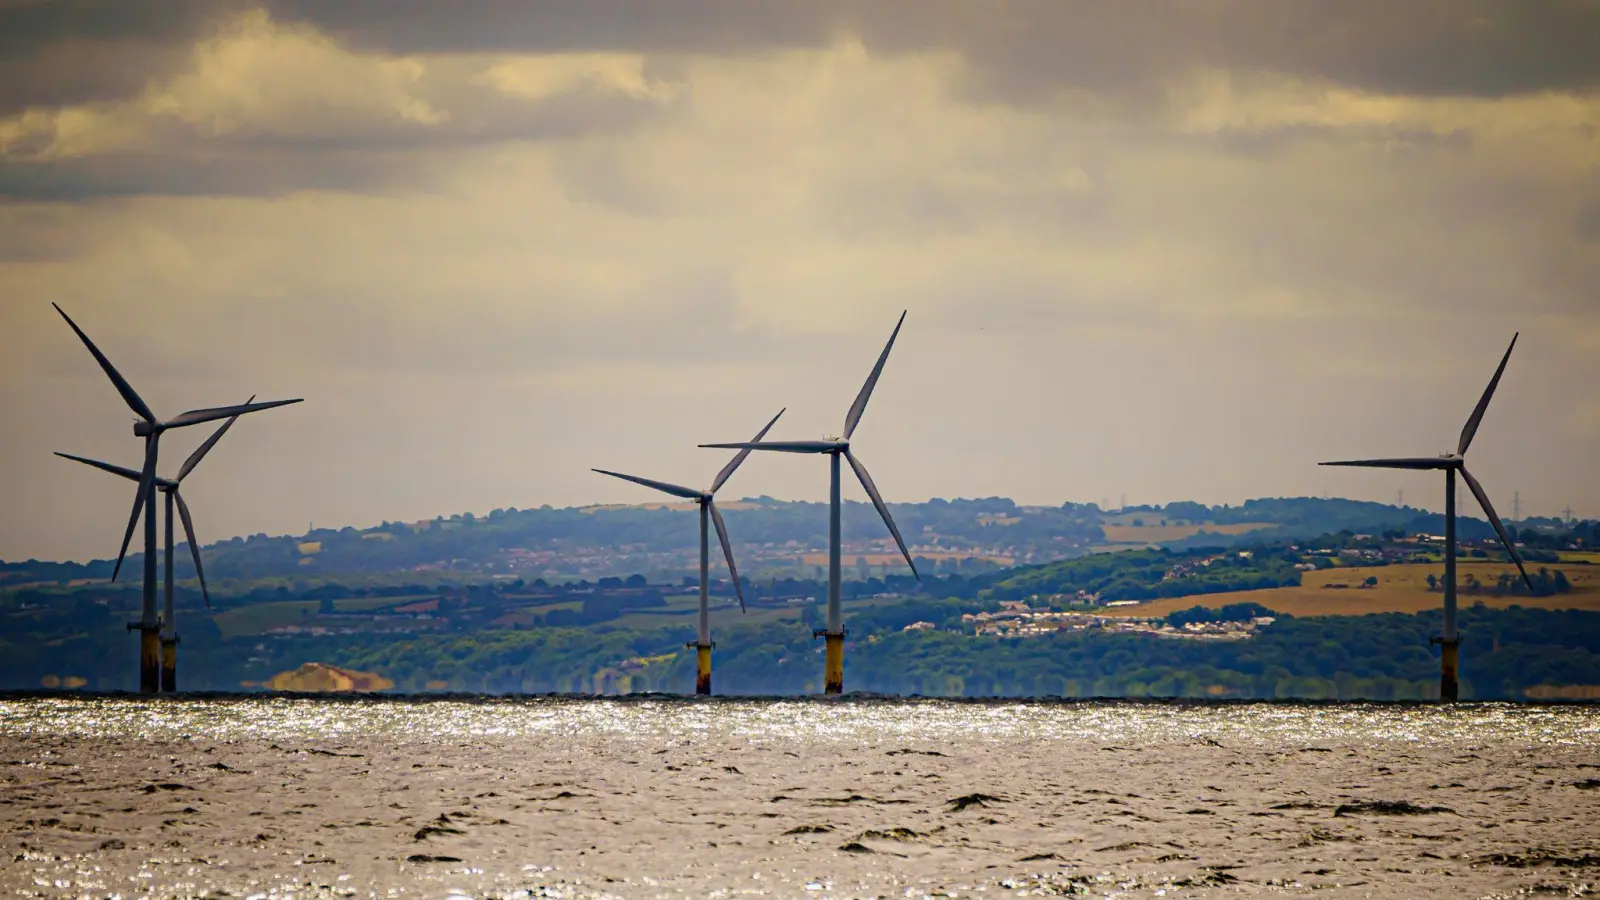 Gwynt y Mor von RWE, der zweitgrößte Offshore-Windpark der Welt, liegt acht Meilen (etwa 13 Kilometer) vor der Küste von Nordwales in der Liverpool Bay. (Foto: Ben Birchall/PA Wire/dpa)